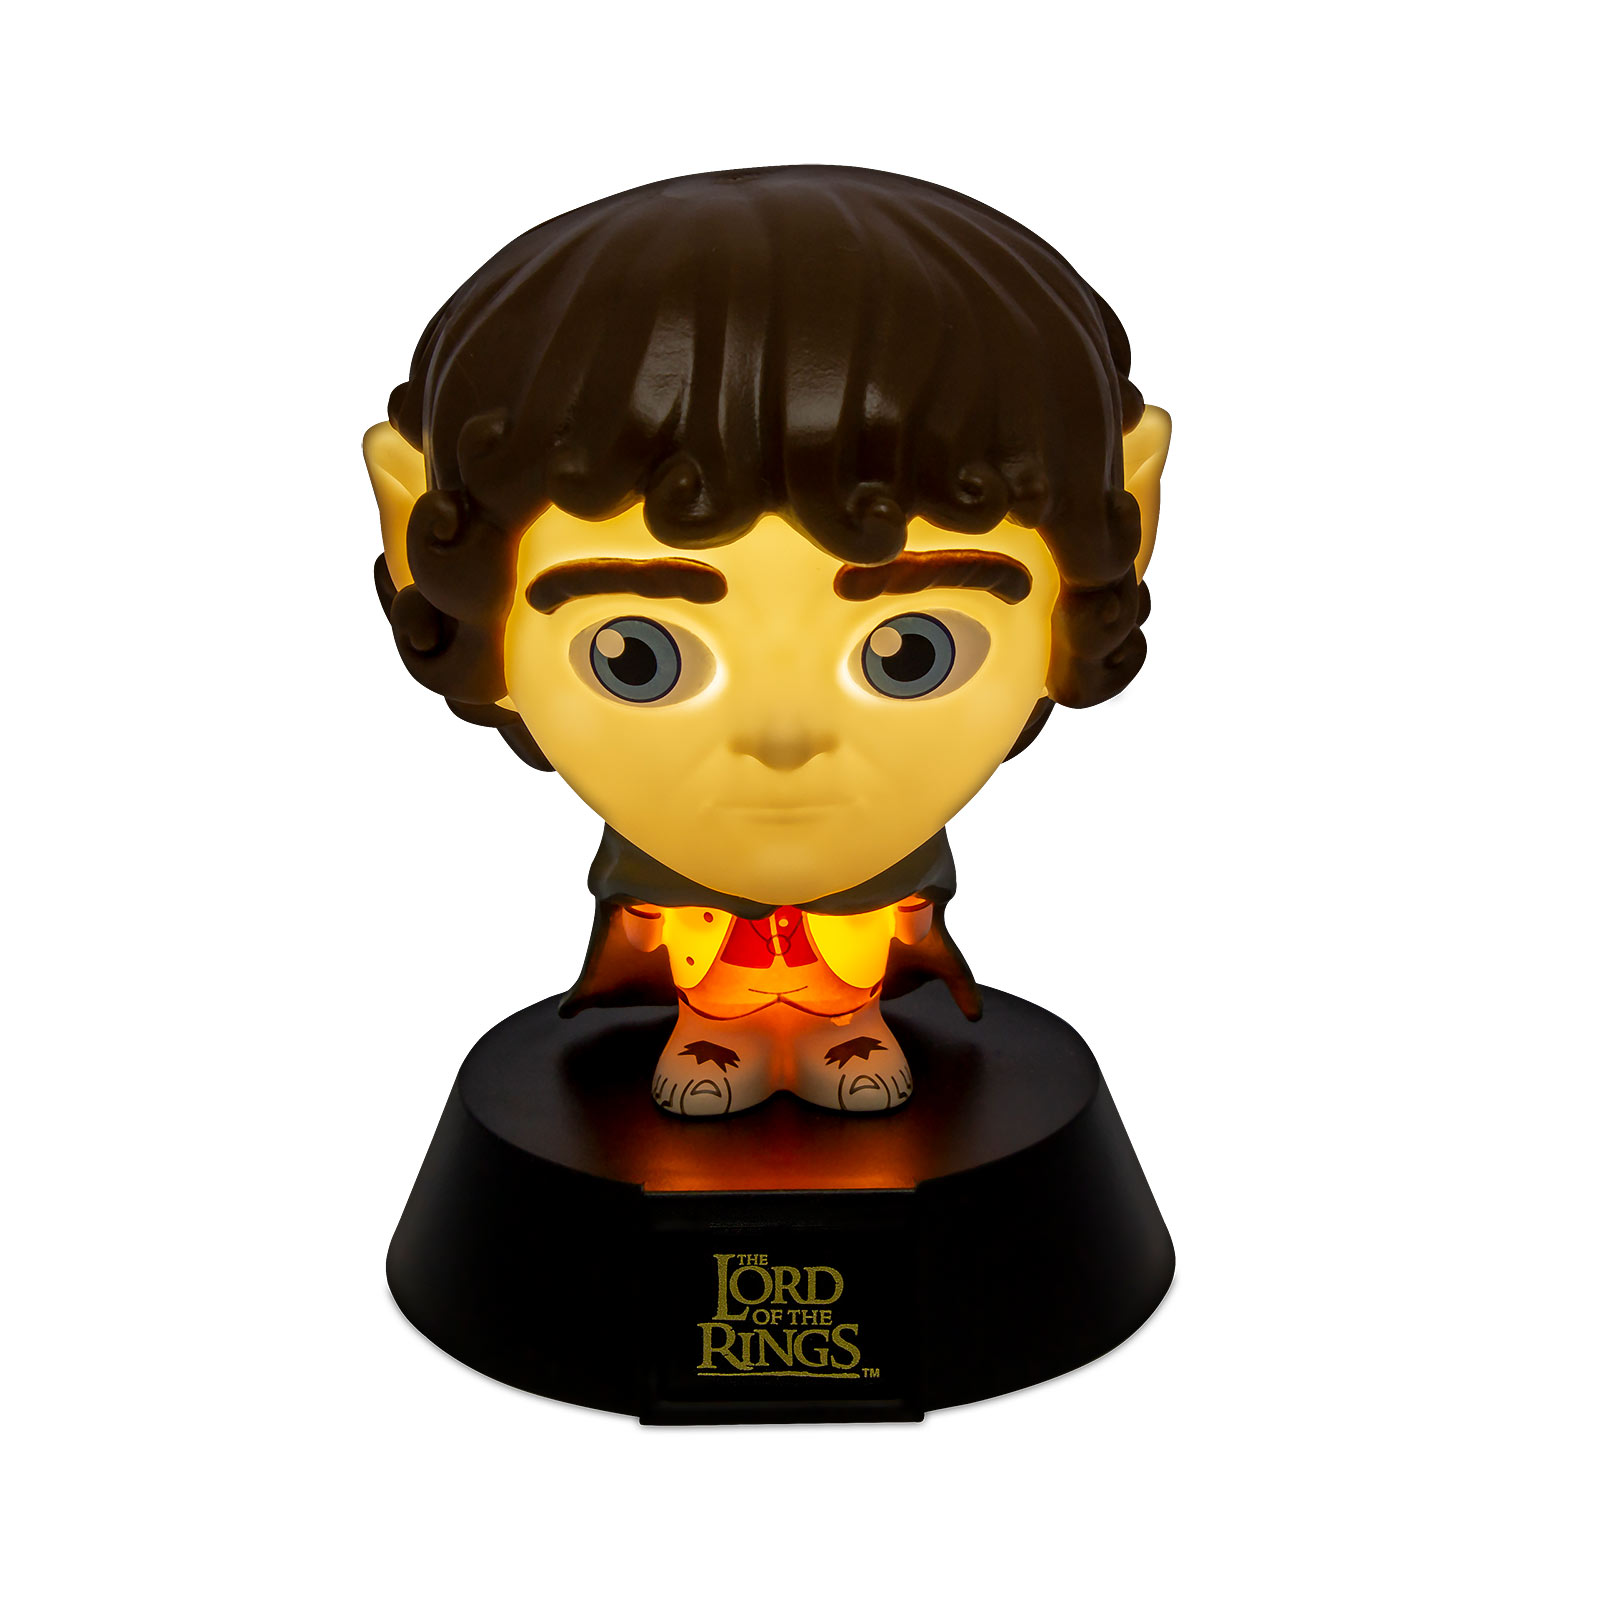 Herr der Ringe - Frodo Icons 3D Tischlampe